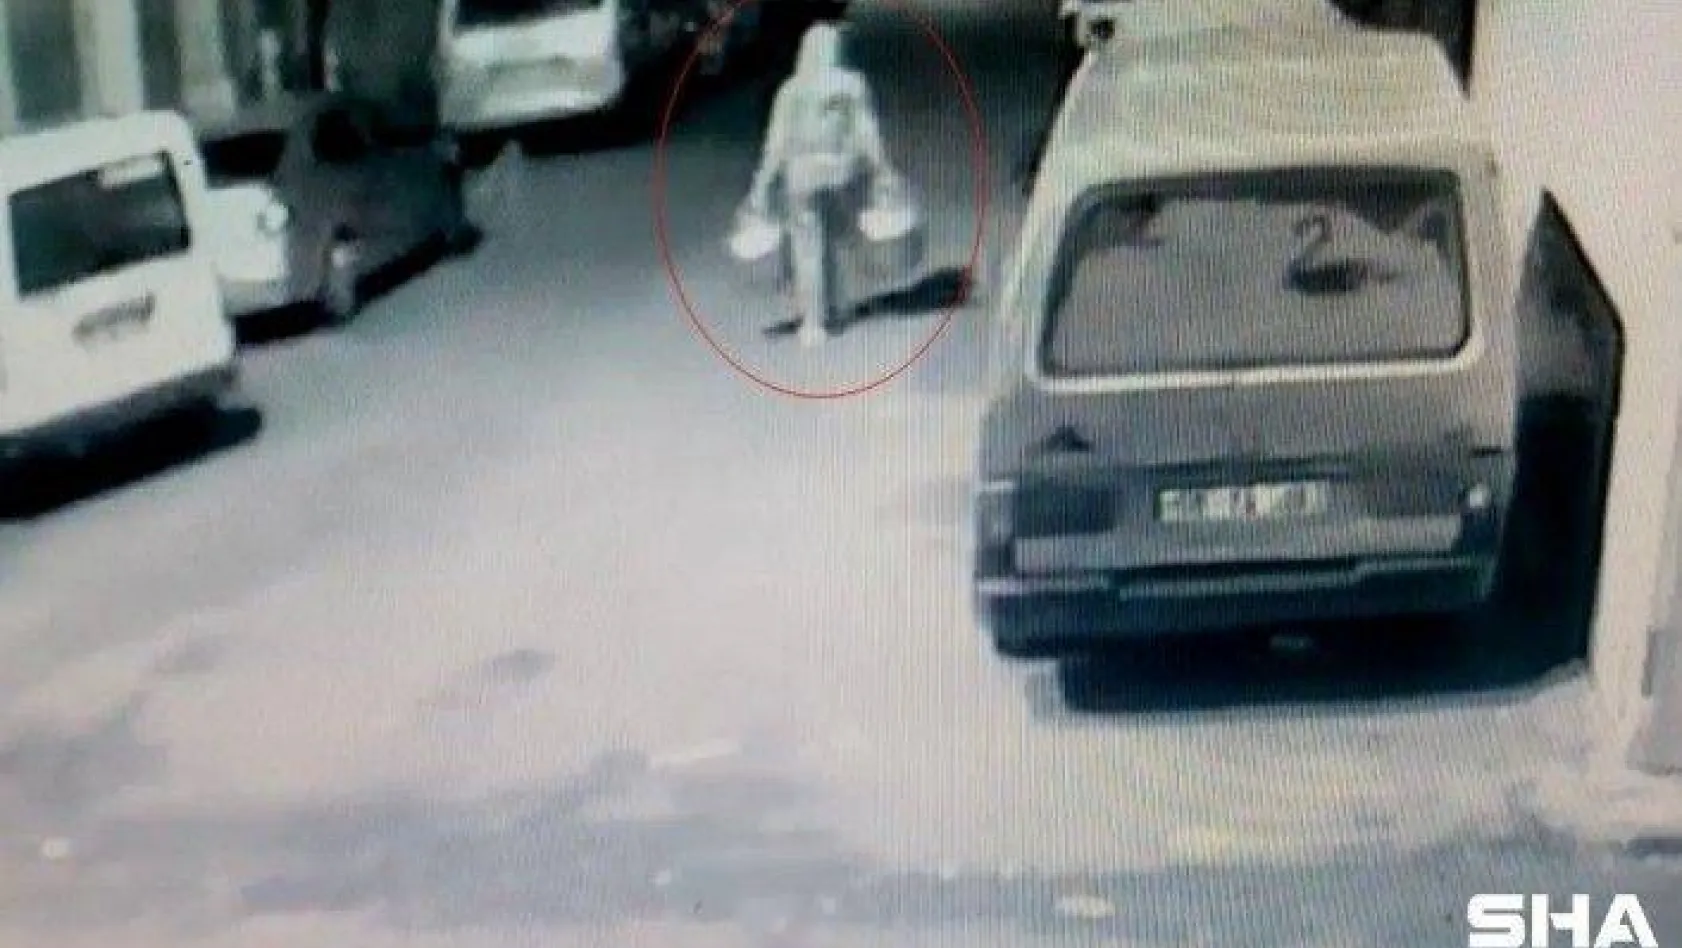 Çorlu'da tüpçüye 3. kez hırsızlık şoku